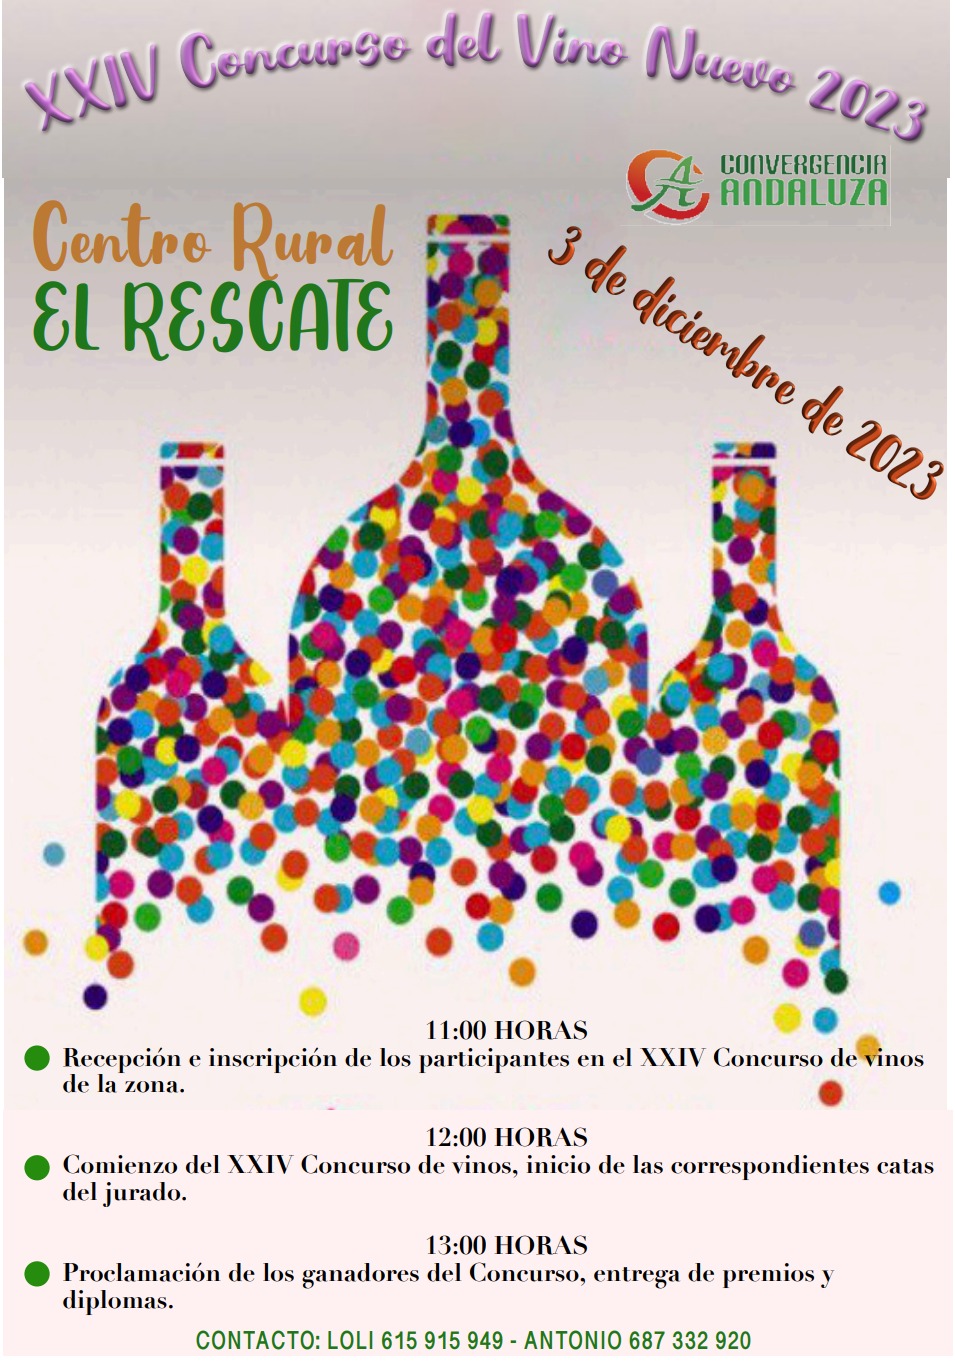 Este domingo se celebra en Rescate la jornada de convivencia ‘Vino Nuevo 2023’ organizado por Convergencia Andaluza